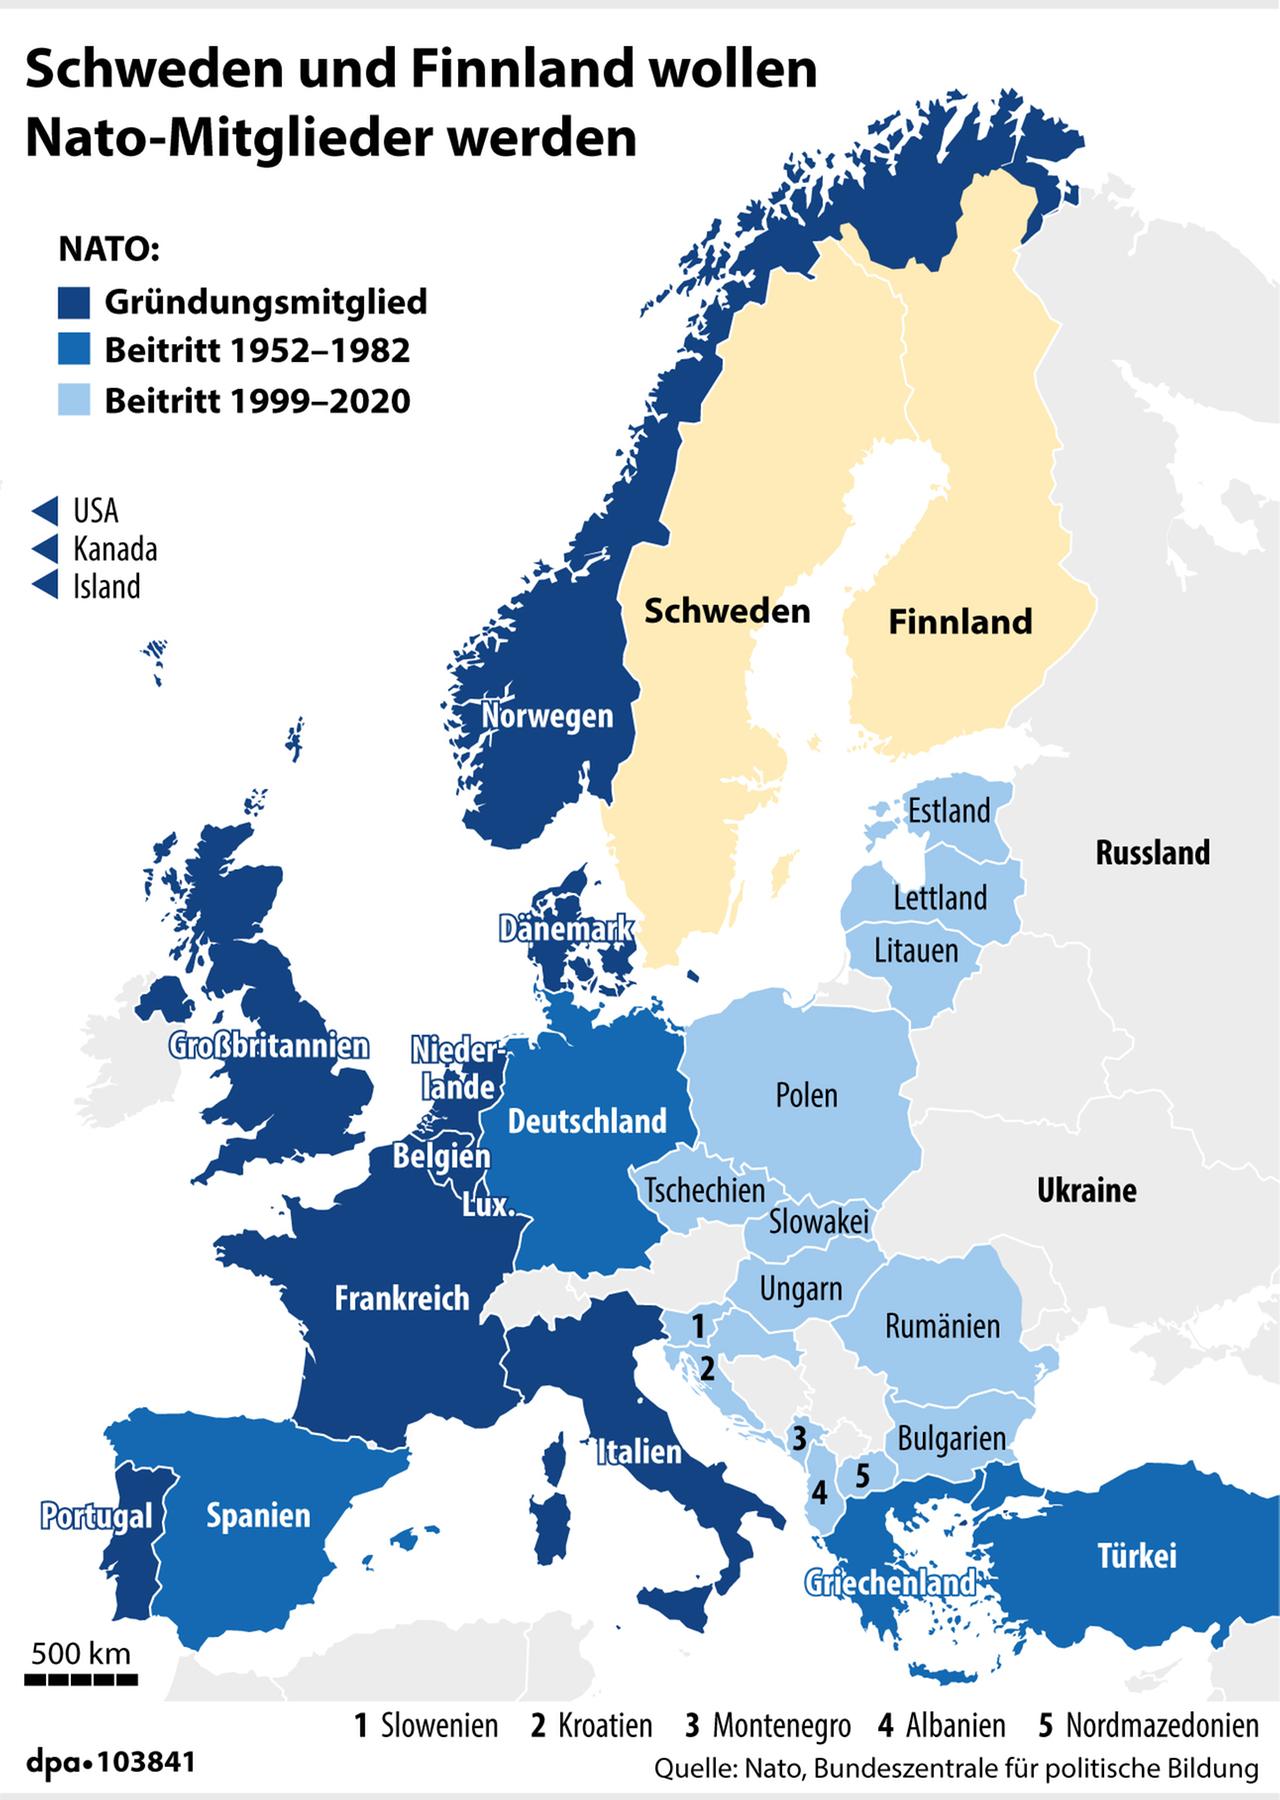 Die Grafik zeigt NATO-Beitritte von 1952 bis 1982 und Beitritte von 1999 bis 2020 sowie Schweden und Finnland, die nicht NATO-Mitglieder sind